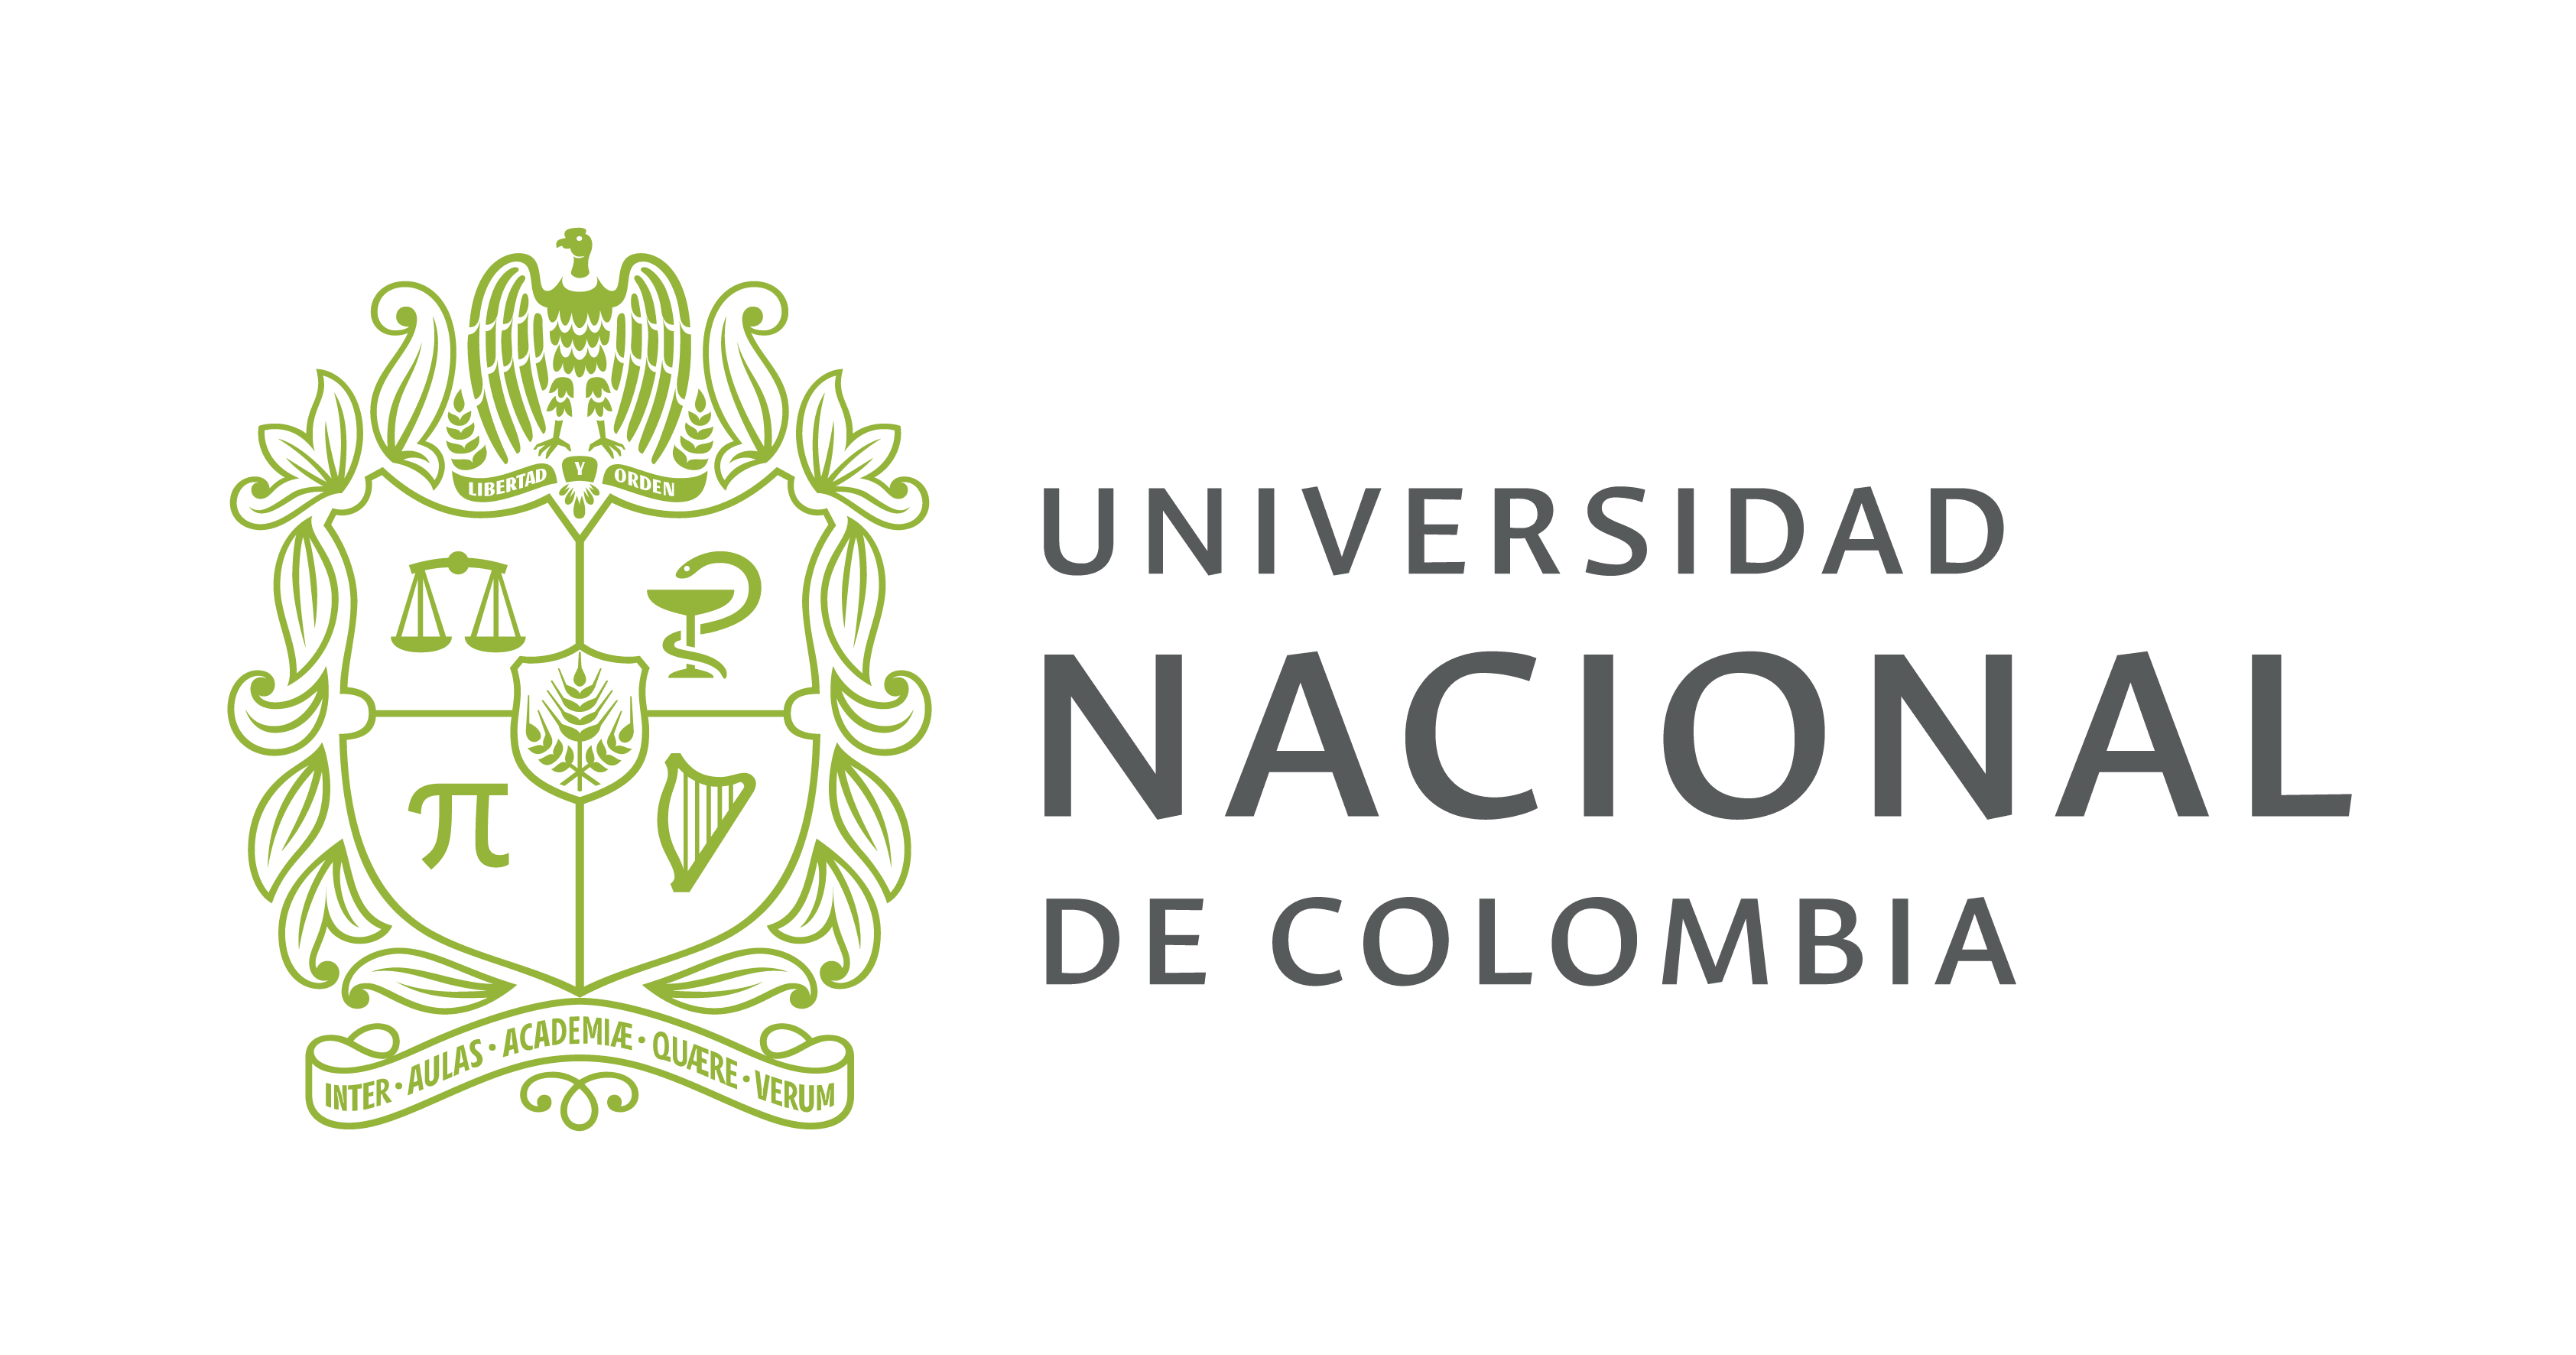 Universidad Nacional de Colombia logo